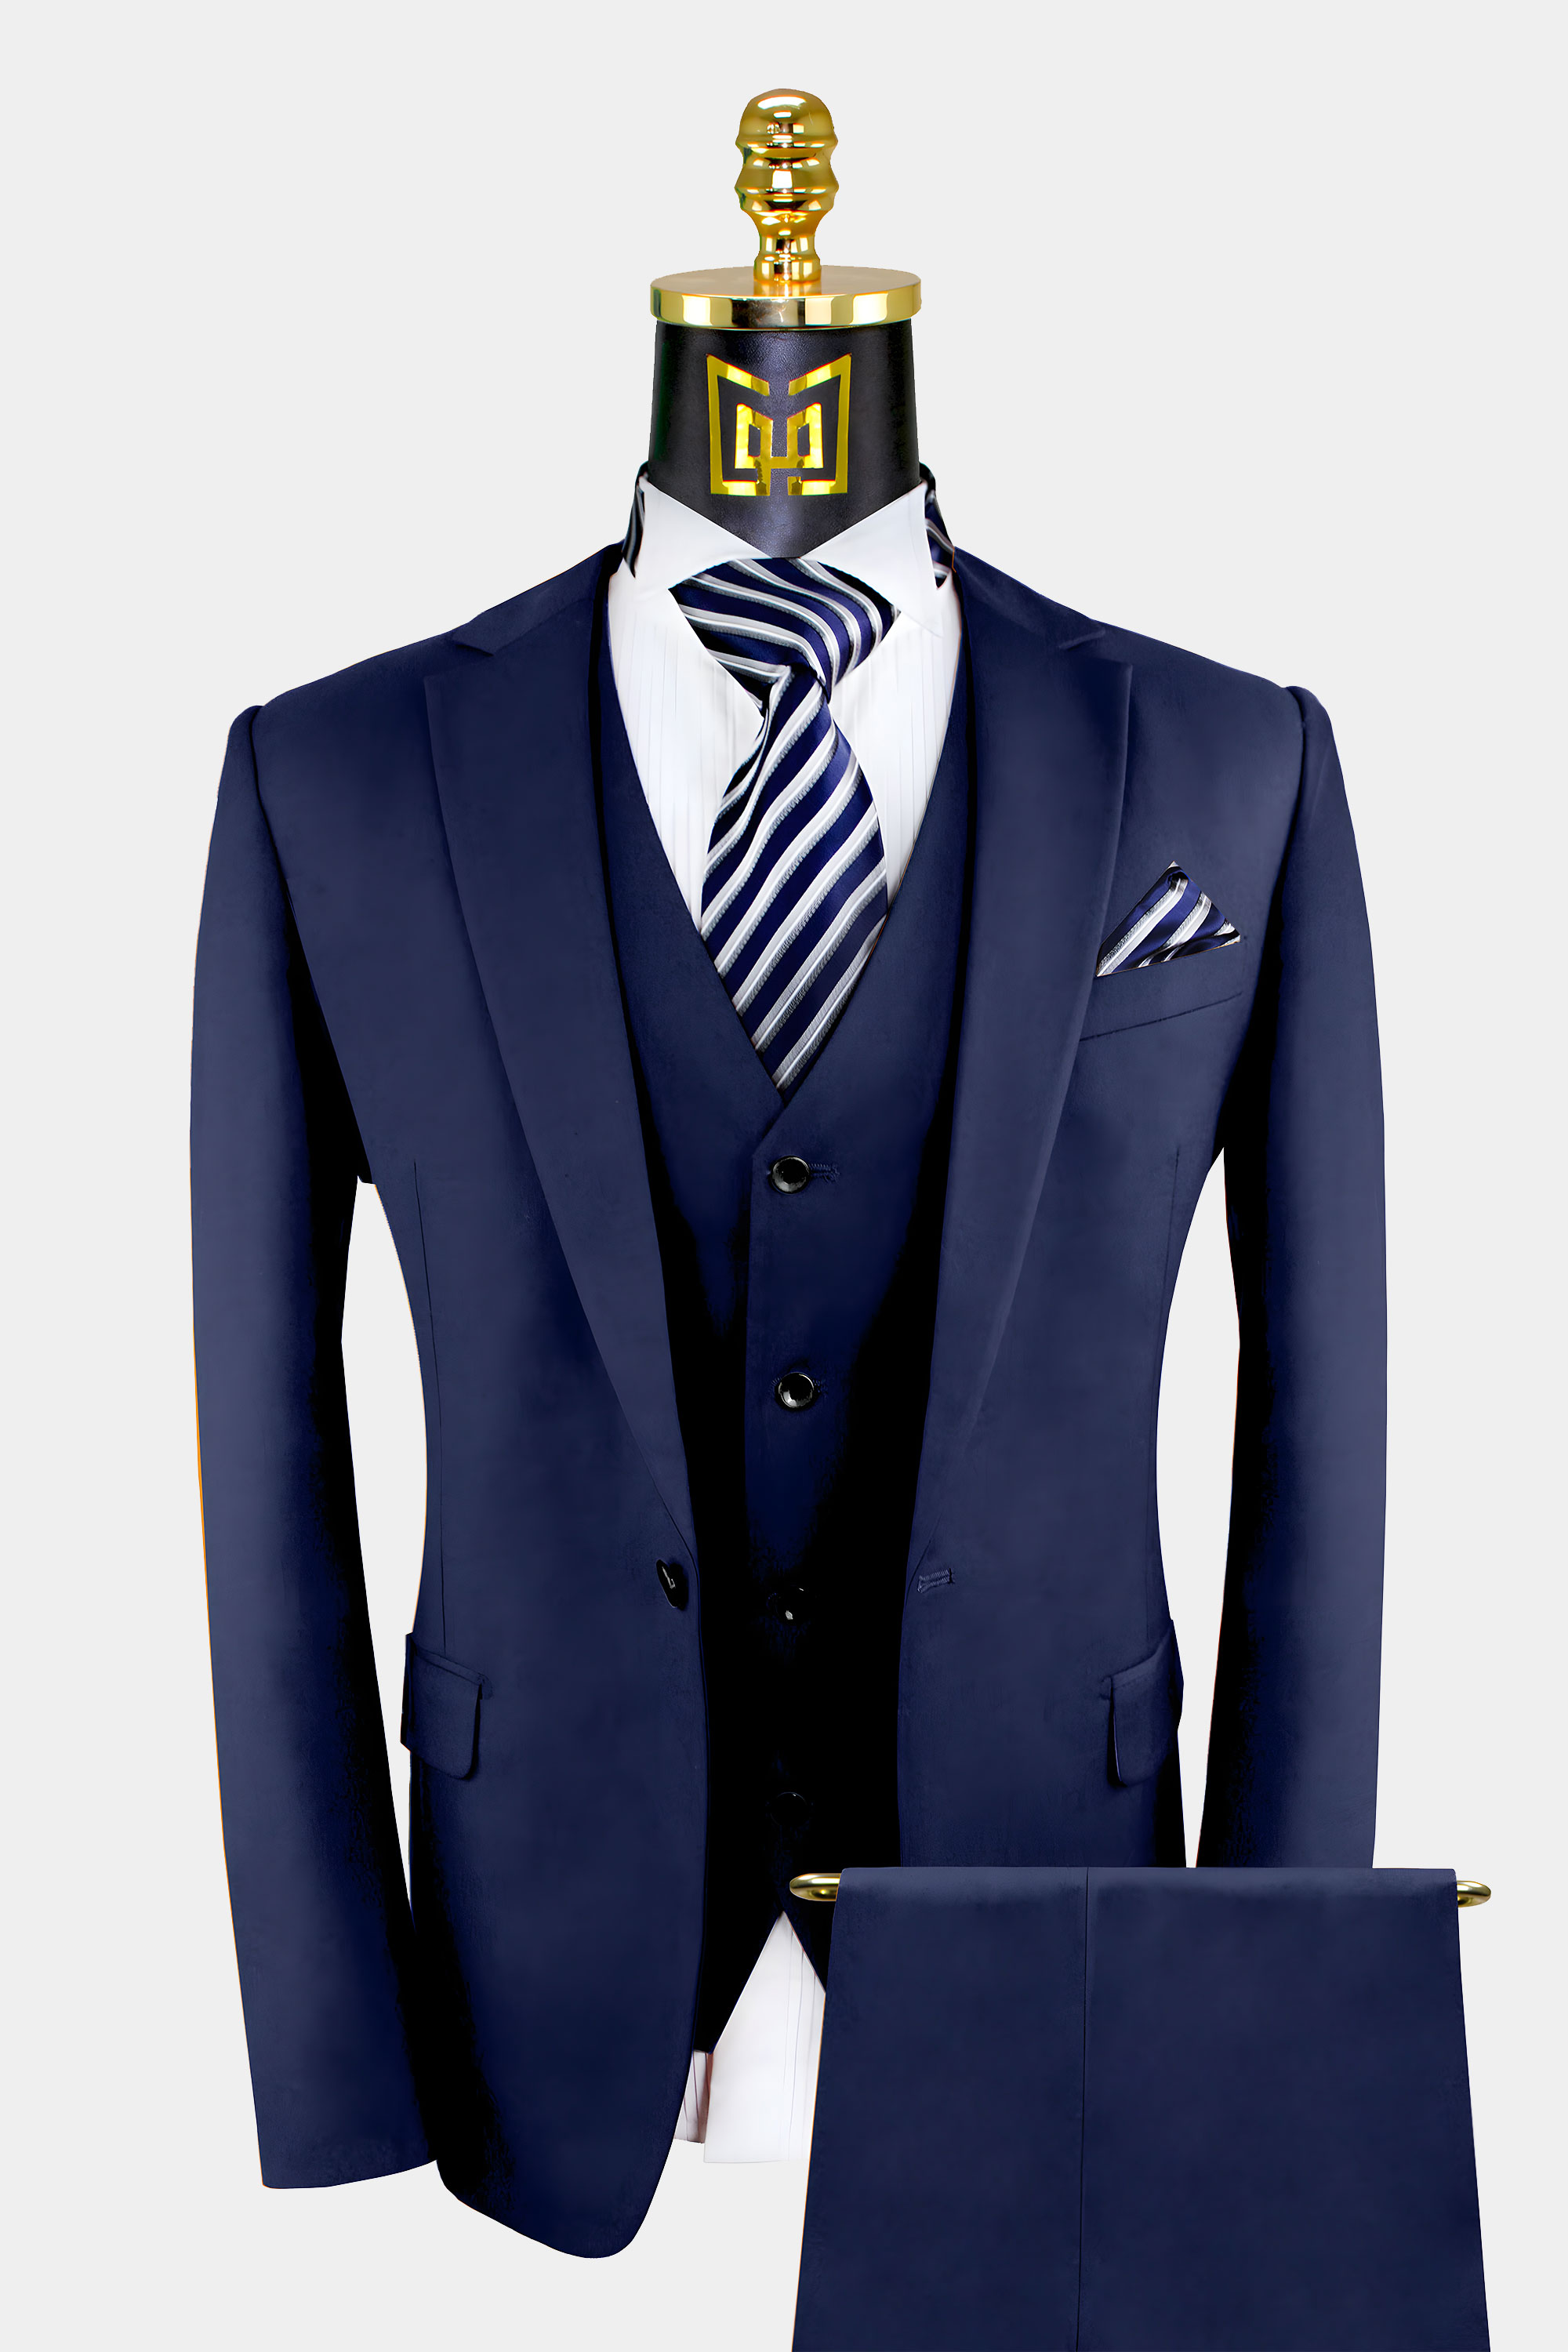 3-Piece-Navy-Blue-Suit-For-Men-Wedding-Groom-Prom-Tuxedo-from-Gentlemansguru.Com